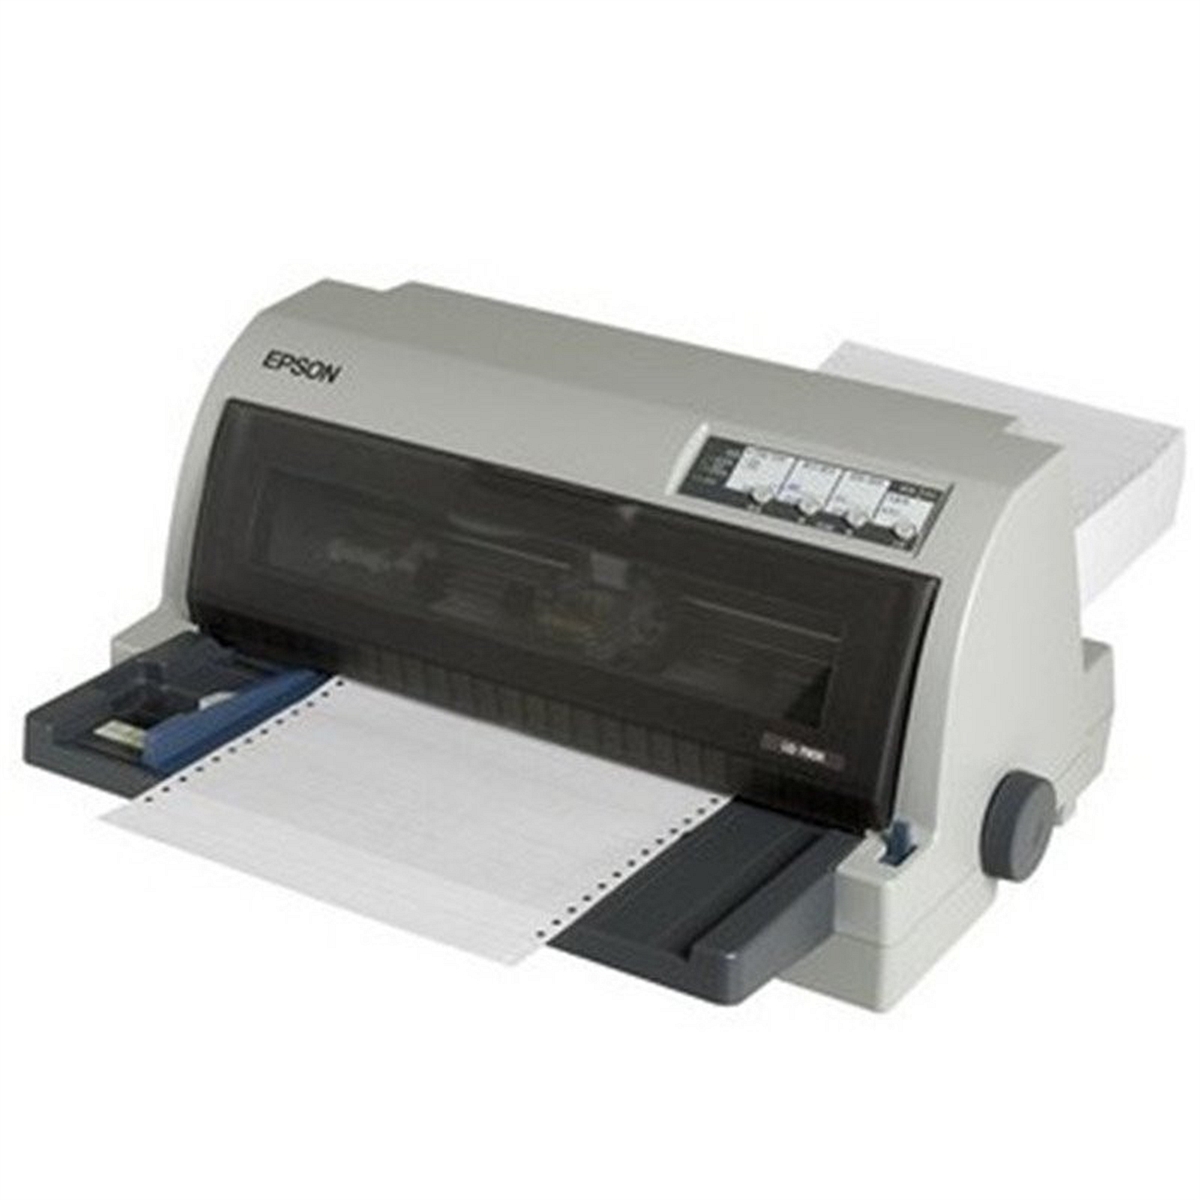 爱普生LQ-790K打印机(台)